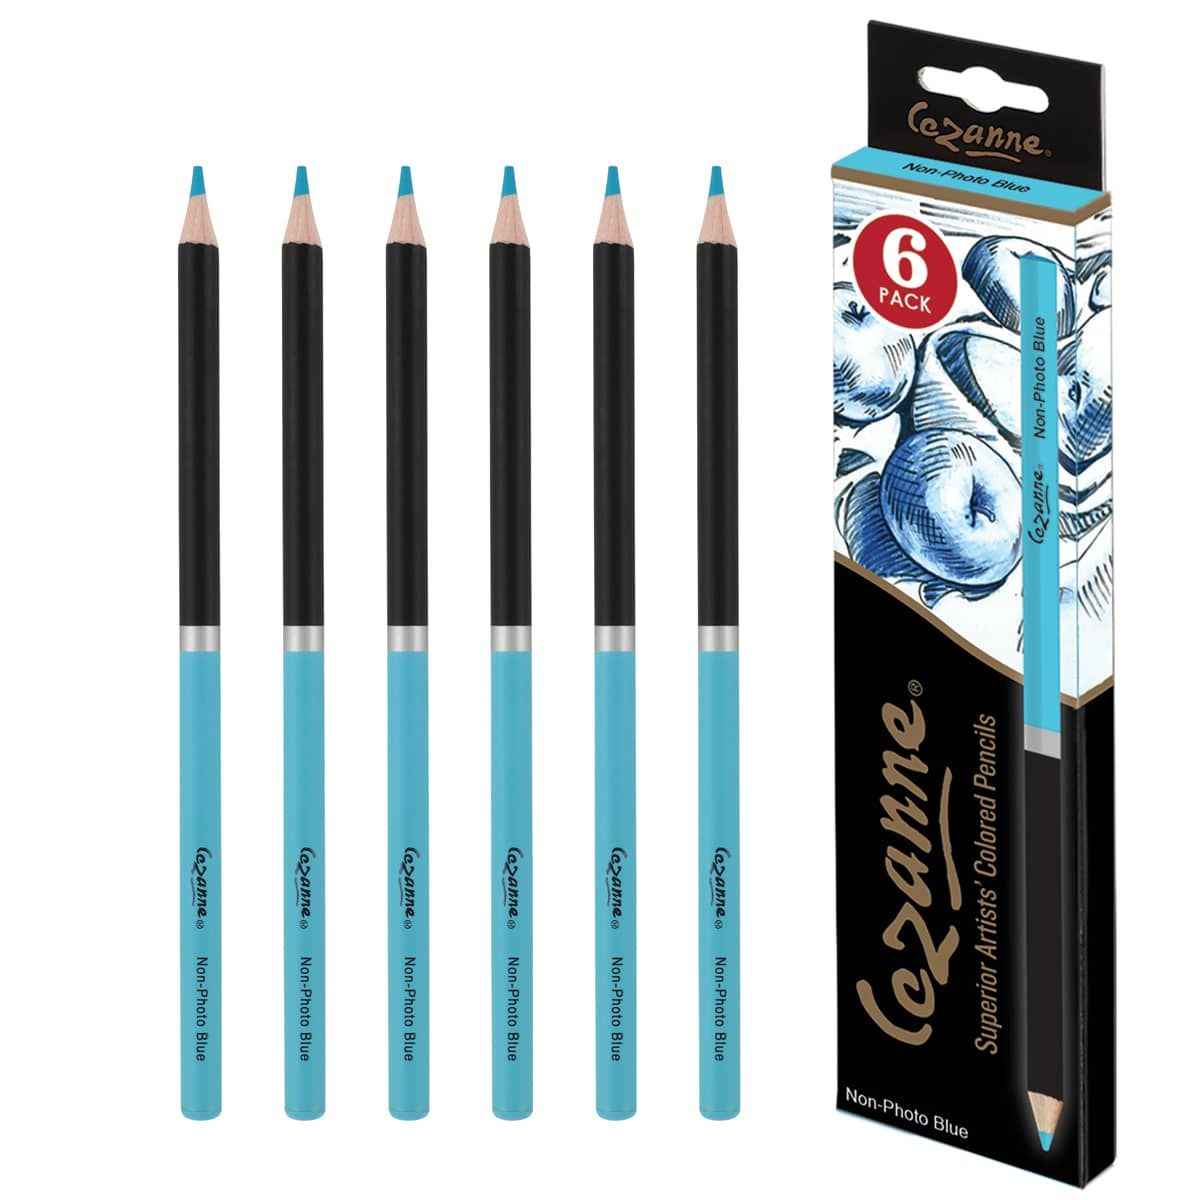 Cezanne Premium Colored Pencil Non-photo Blue, Box of 6